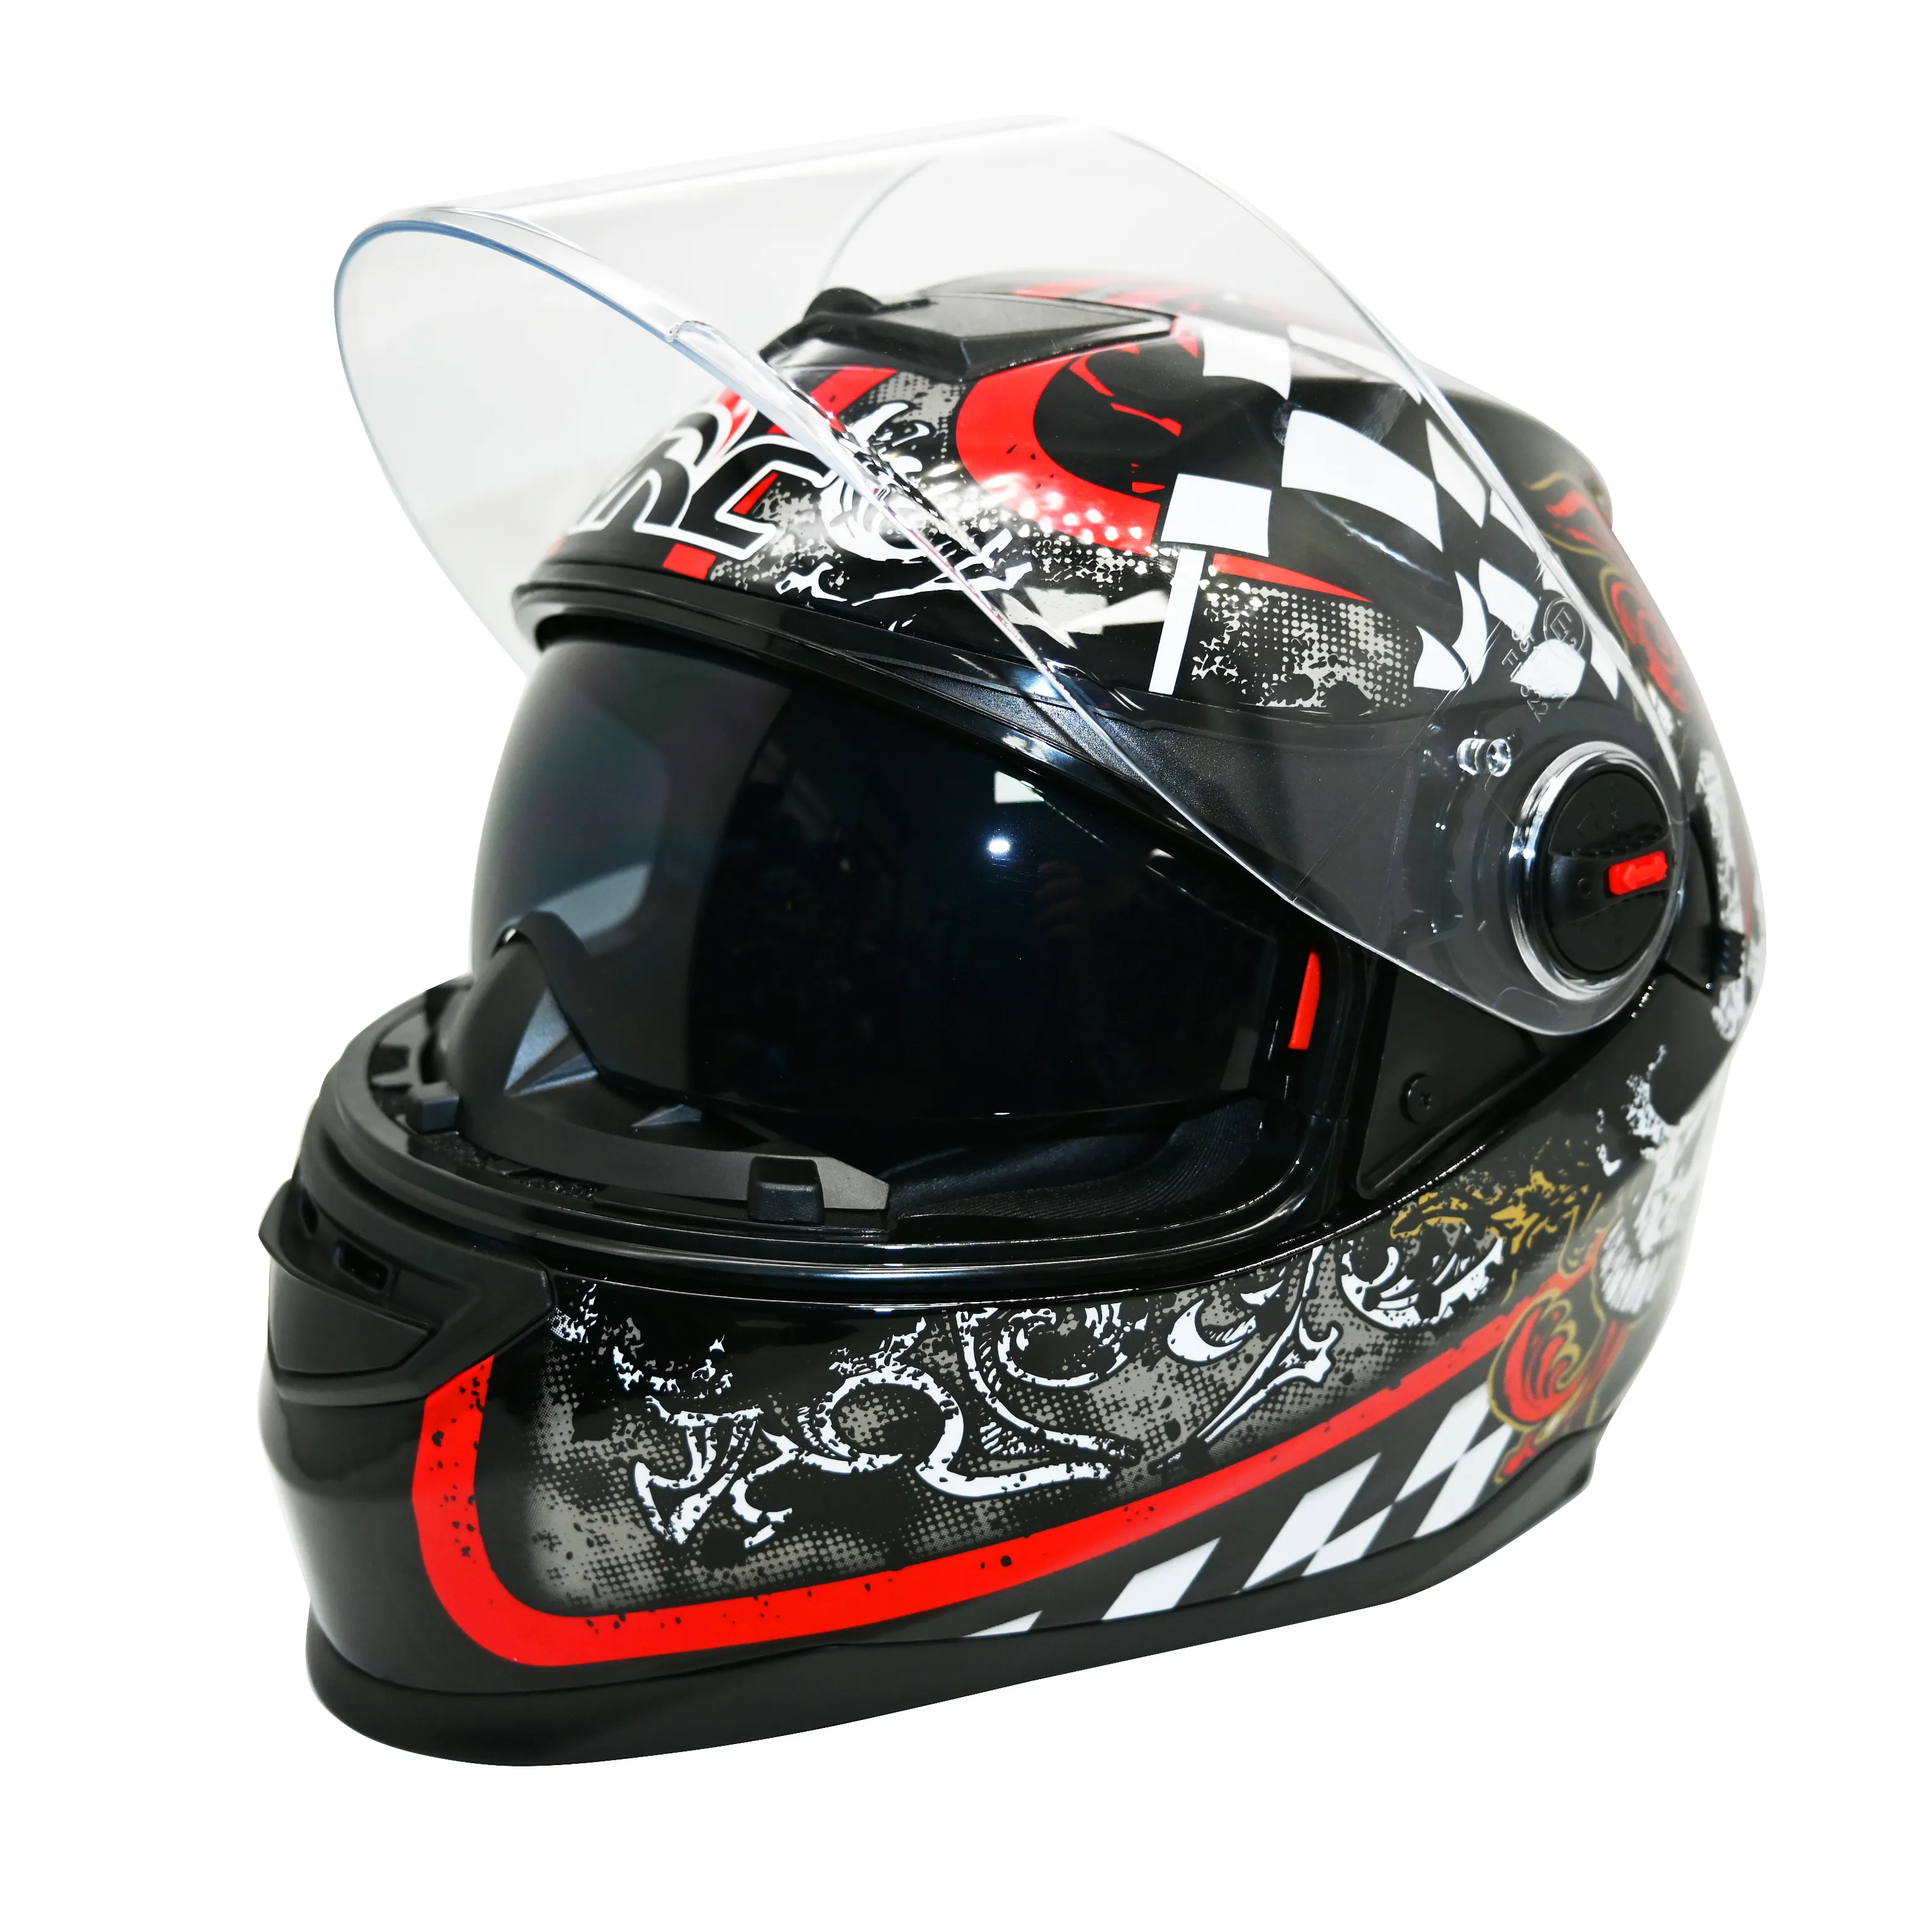 Casco de certificación Dot motocicleta alta calidad OEM ODM casco de motocicleta personalizado doble visera adultos casco de cara completa